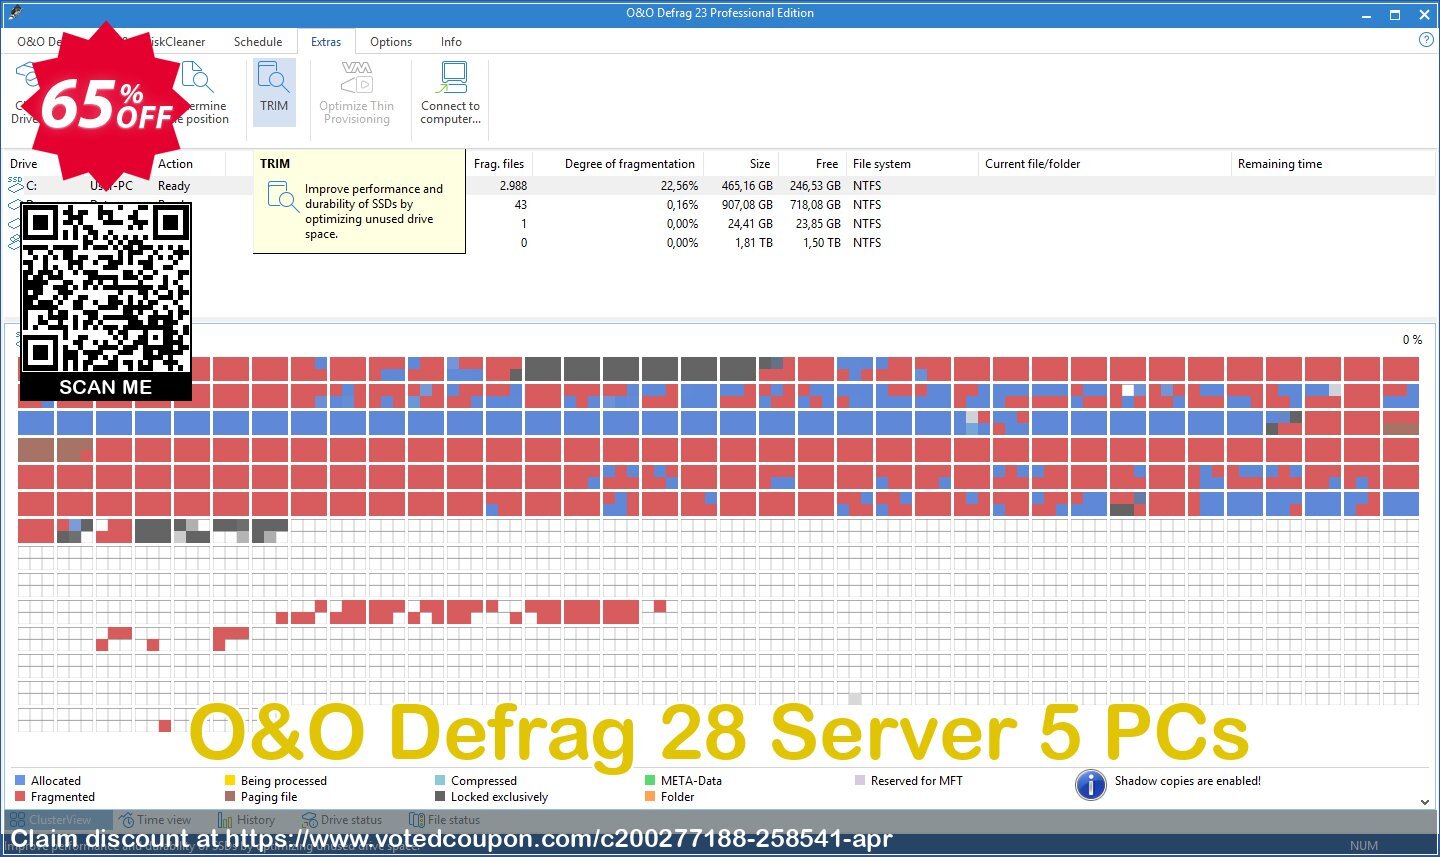 O&O Defrag 28 Server 5 PCs Coupon, discount 65% OFF O&O Defrag 28 Server, verified. Promotion: Big promo code of O&O Defrag 28 Server, tested & approved